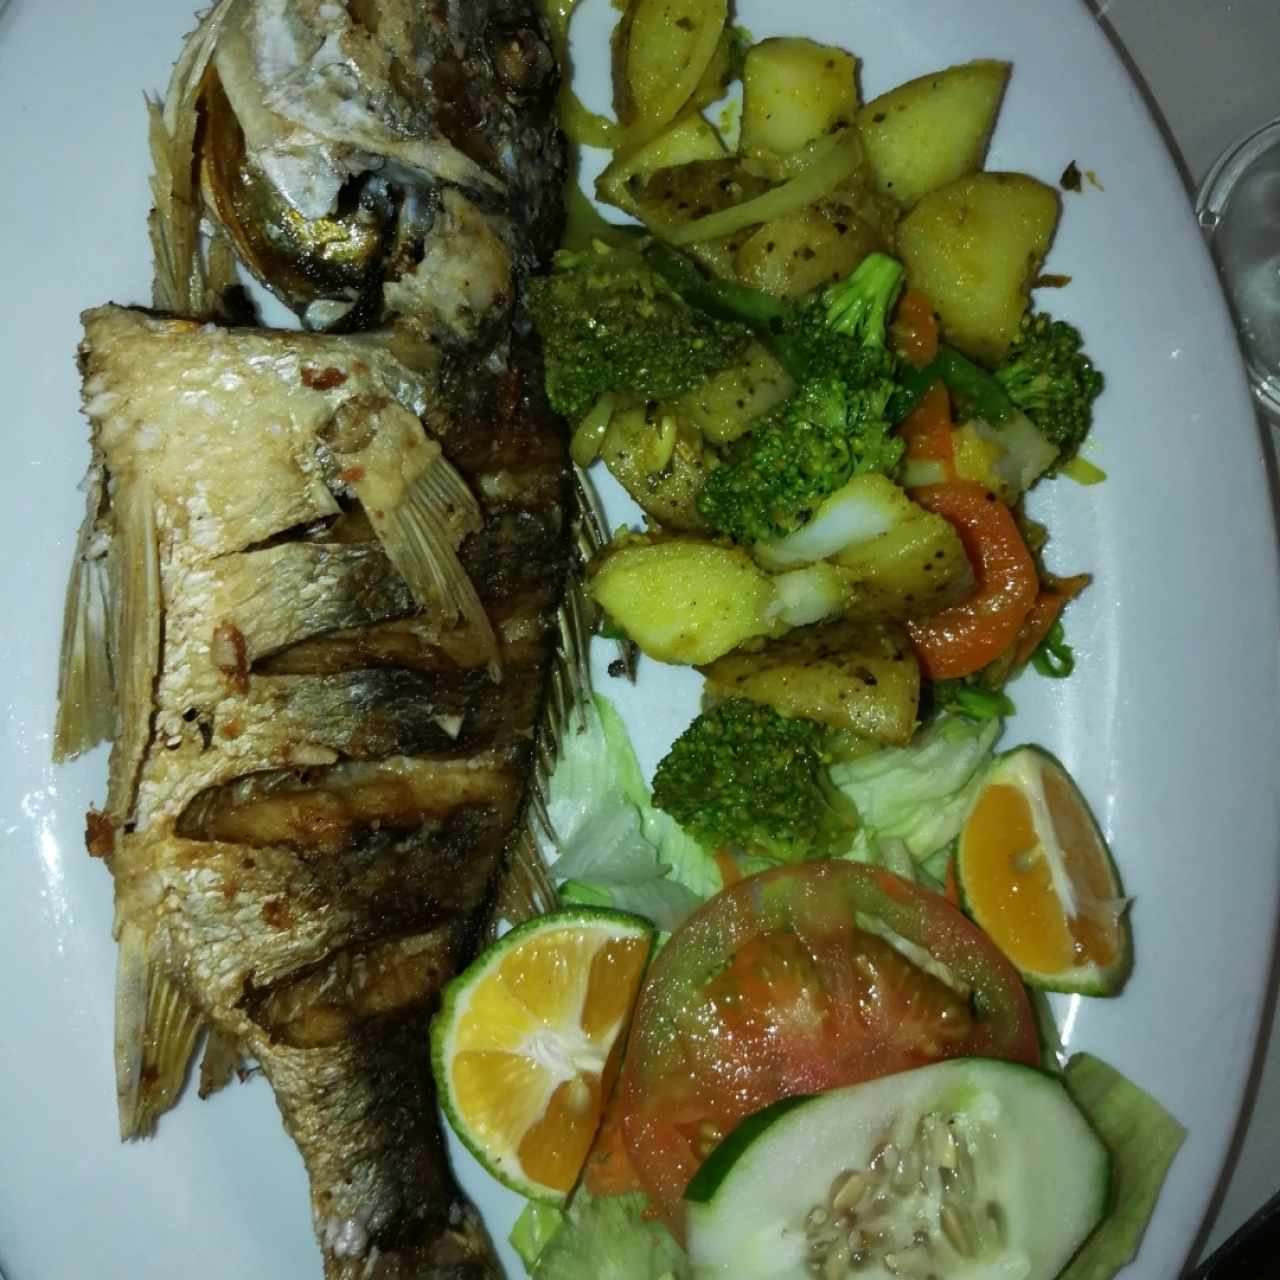 pescado frito con vegetales hervidos